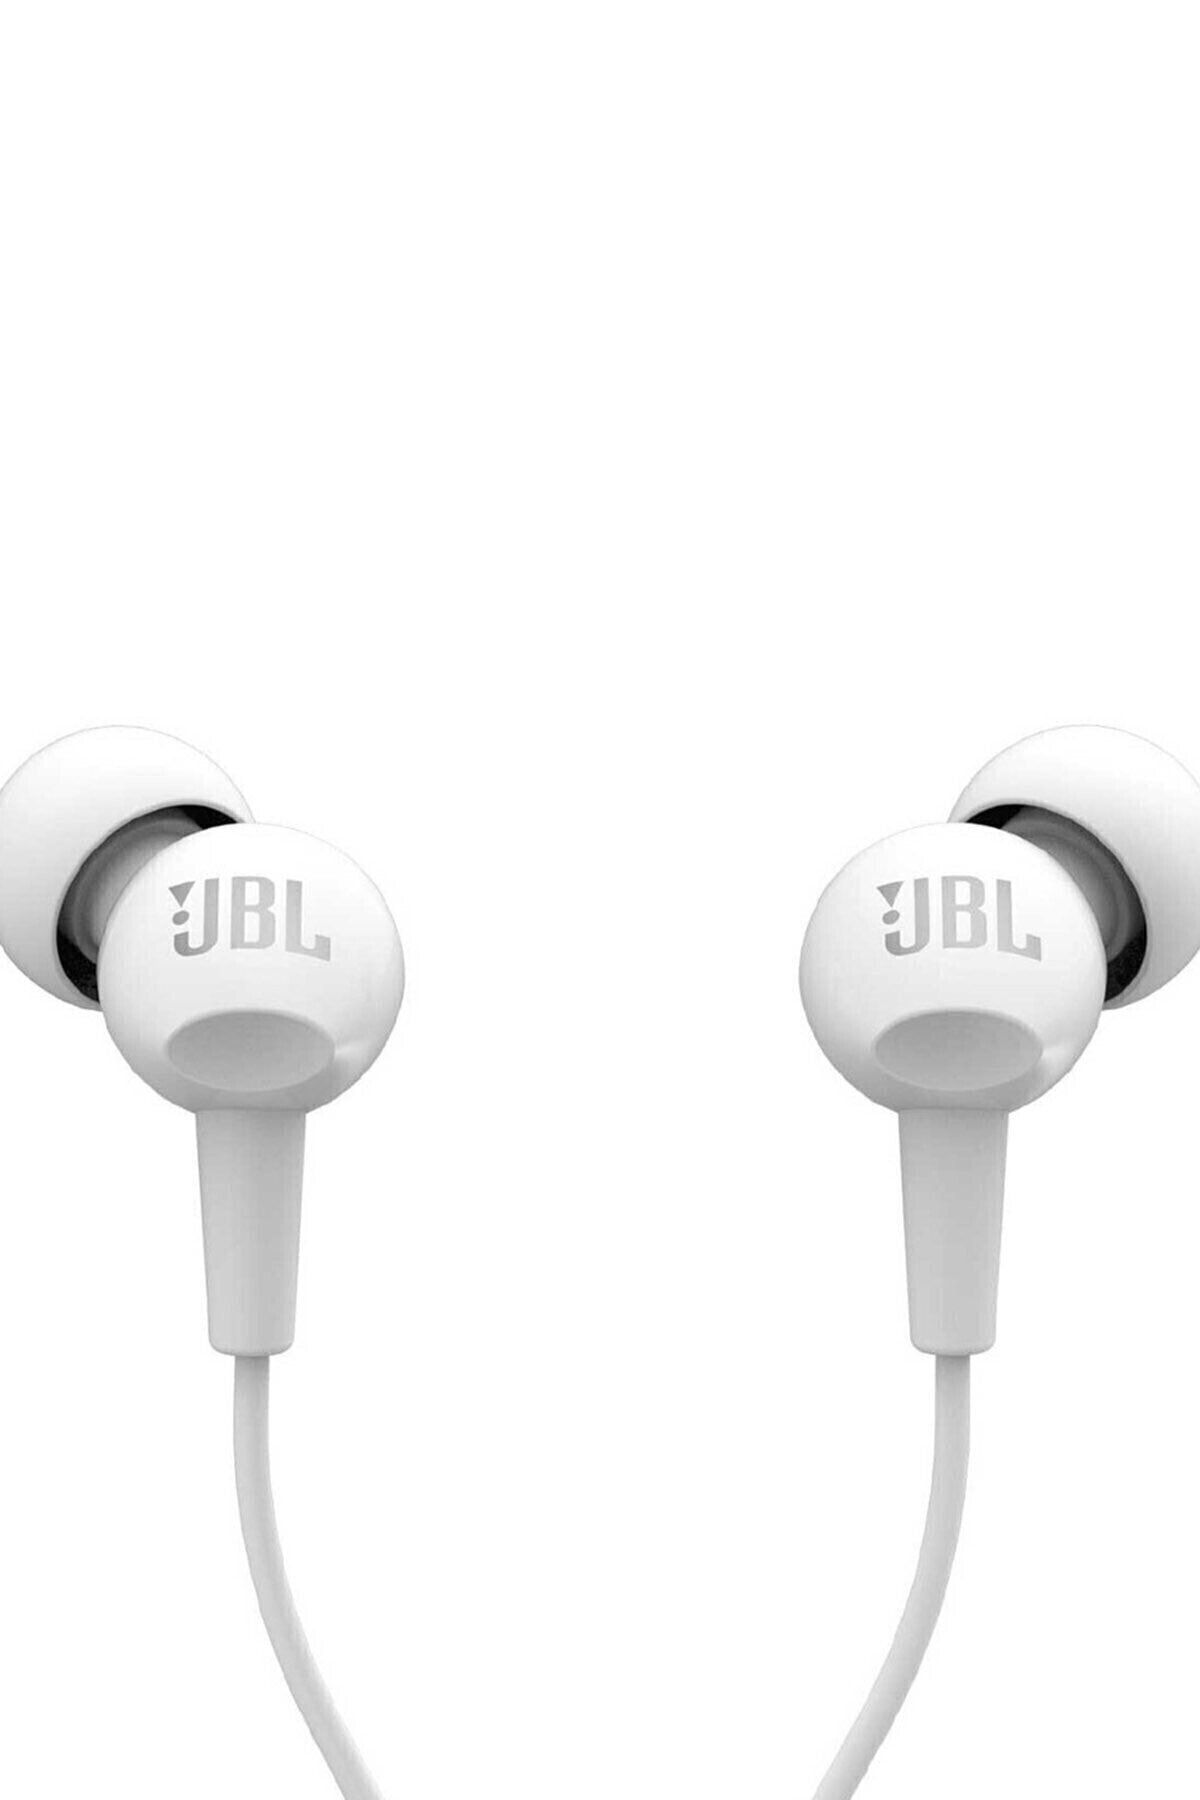 JBL C100sı Mikrofonlu Kulakiçi Kulaklık Ct Ie Beyaz